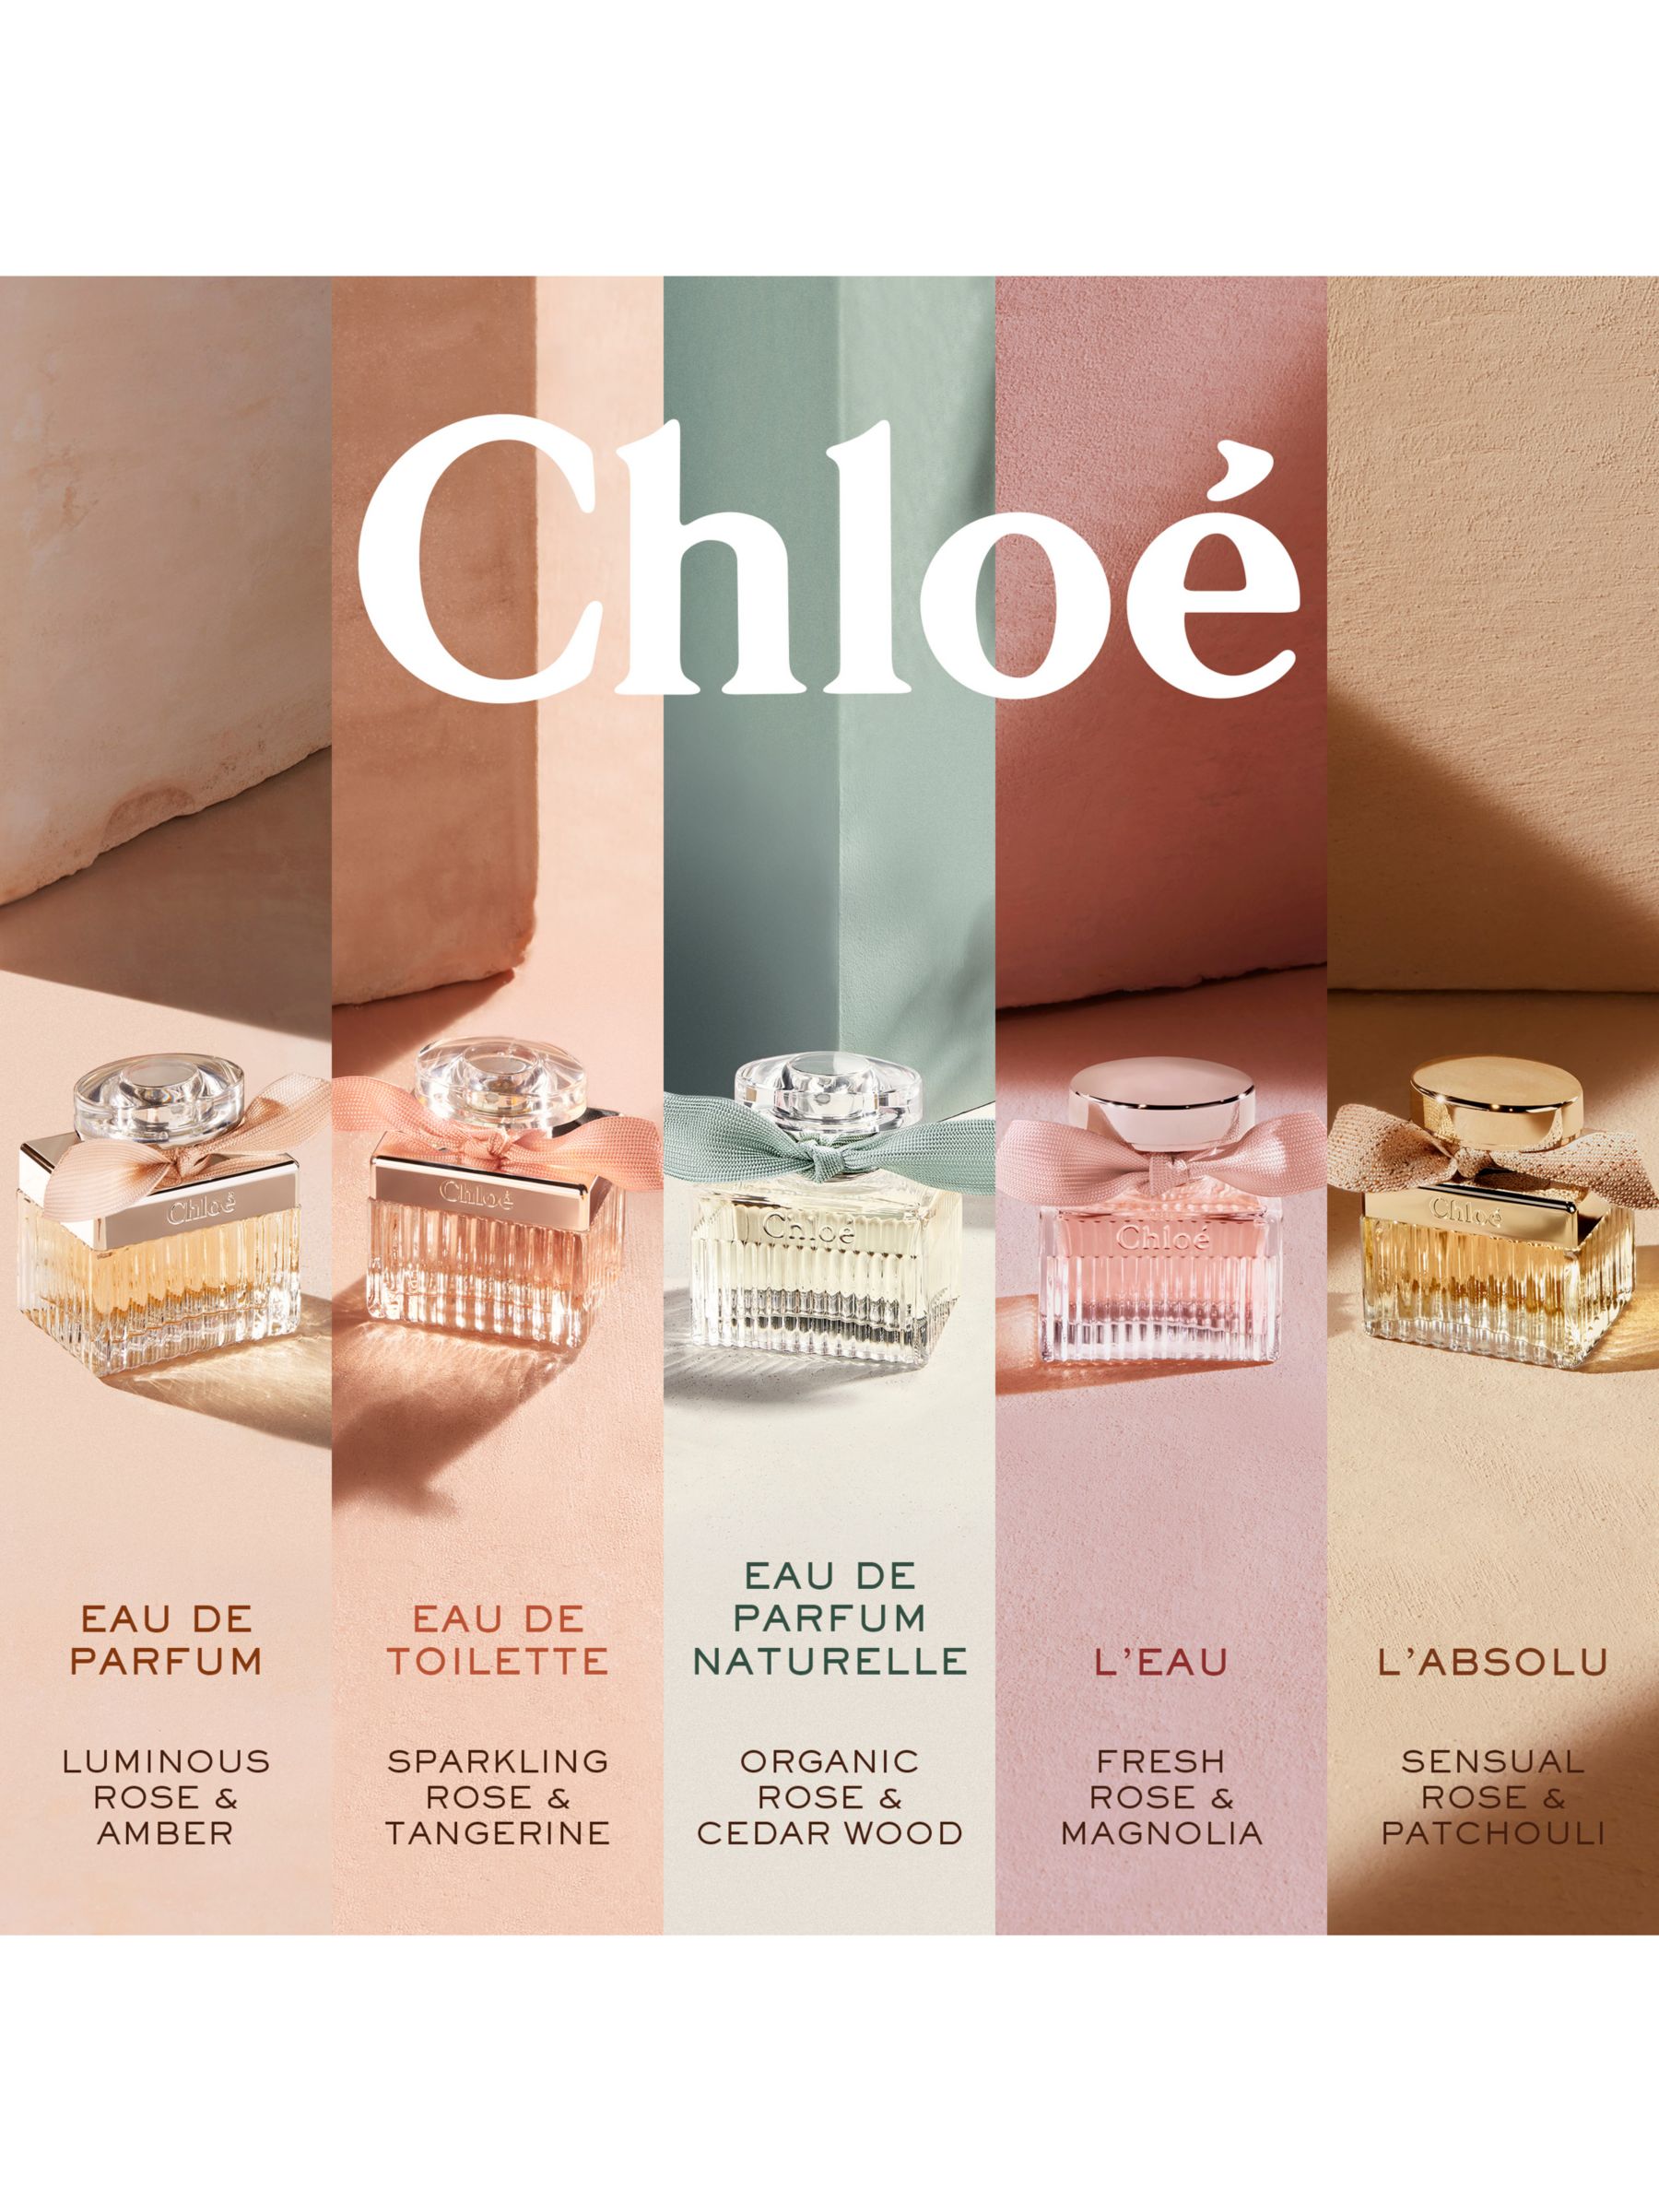 Chloé Eau de Parfum Naturelle, 30ml 8